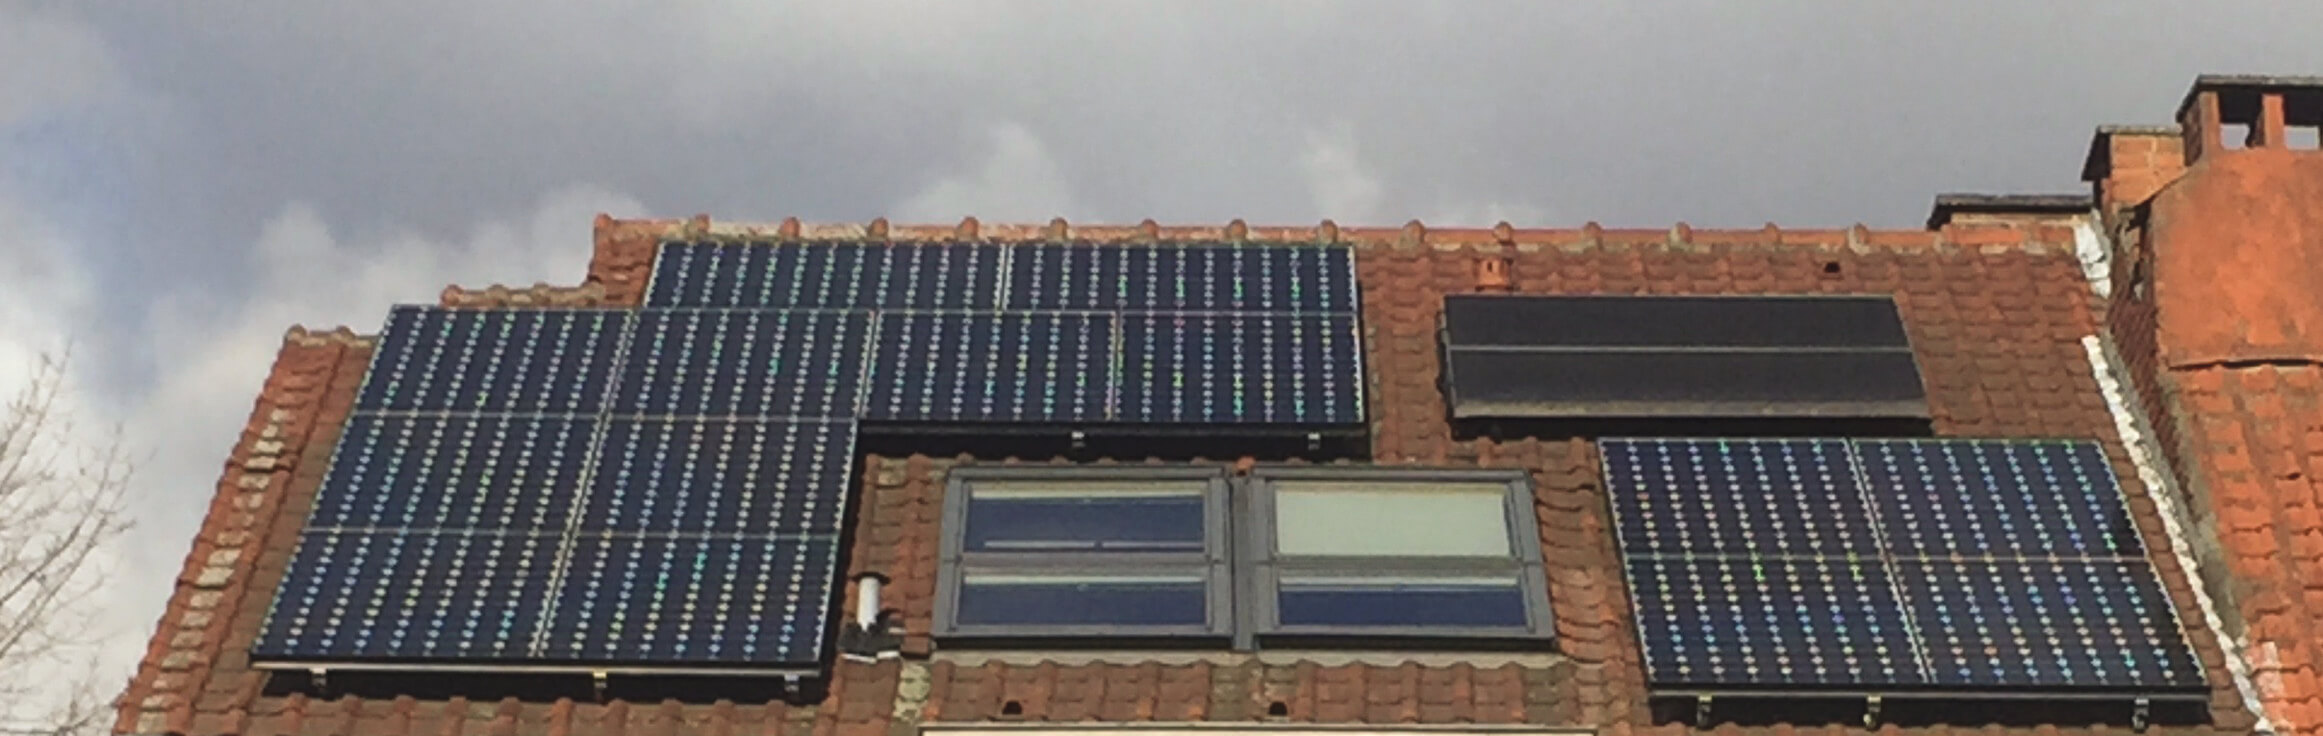 Panneaux solaires photovoltaïques et panneaux solaires thermiques sur un toit